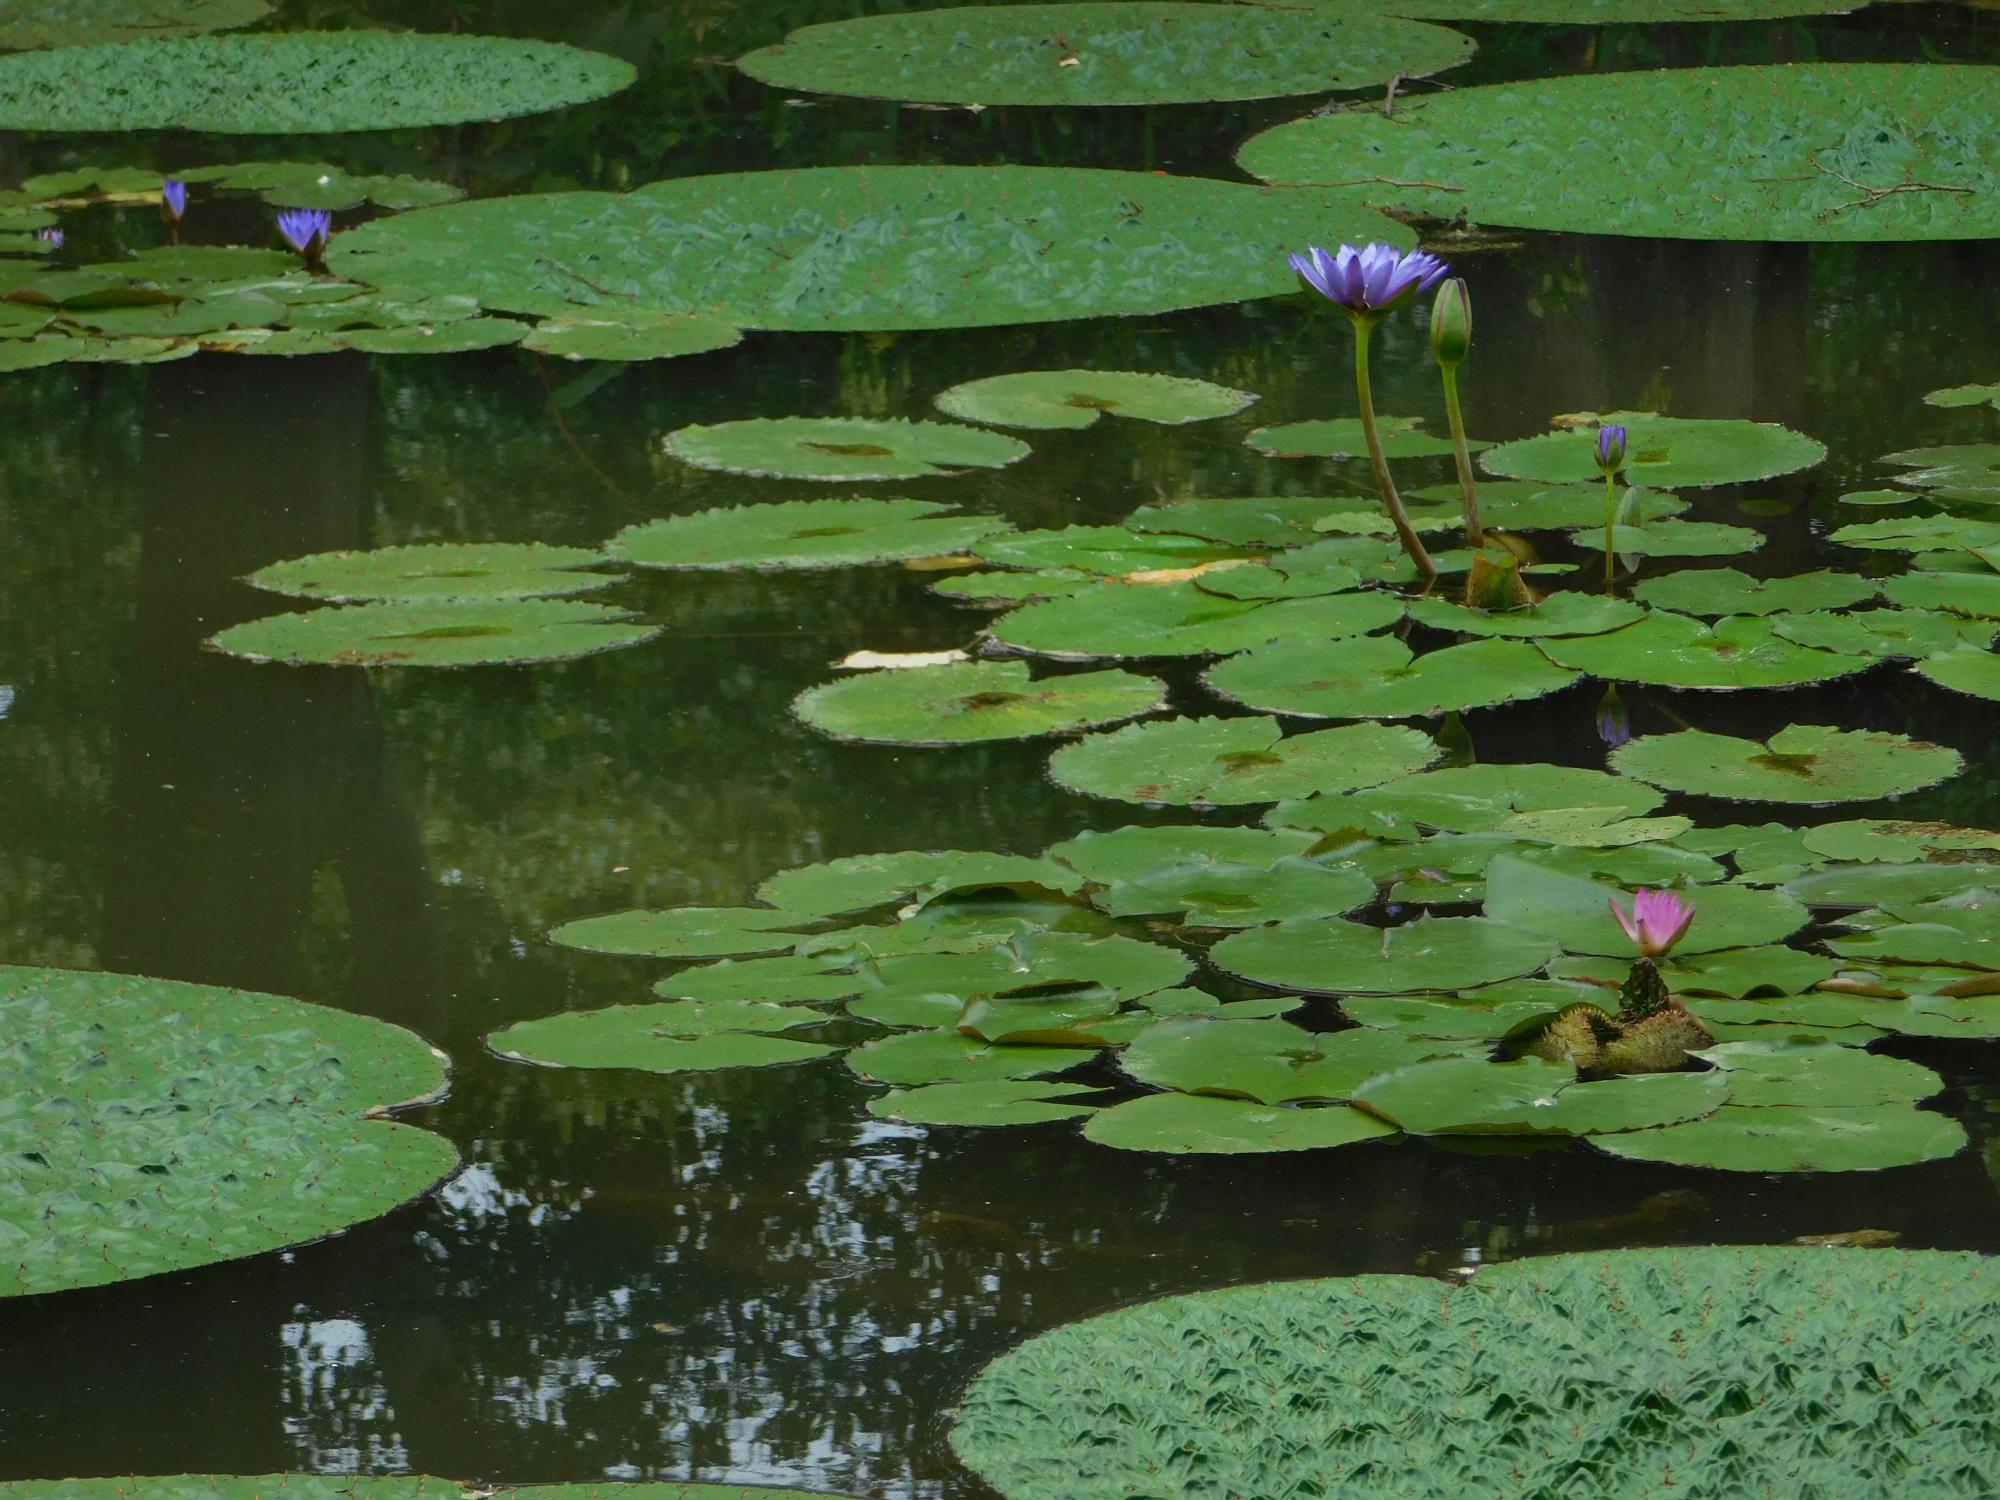 オニバス池では、オニバスの葉が大きく育ってきました。池の熱帯スイレンも毎日花を咲かせていてきれいです。